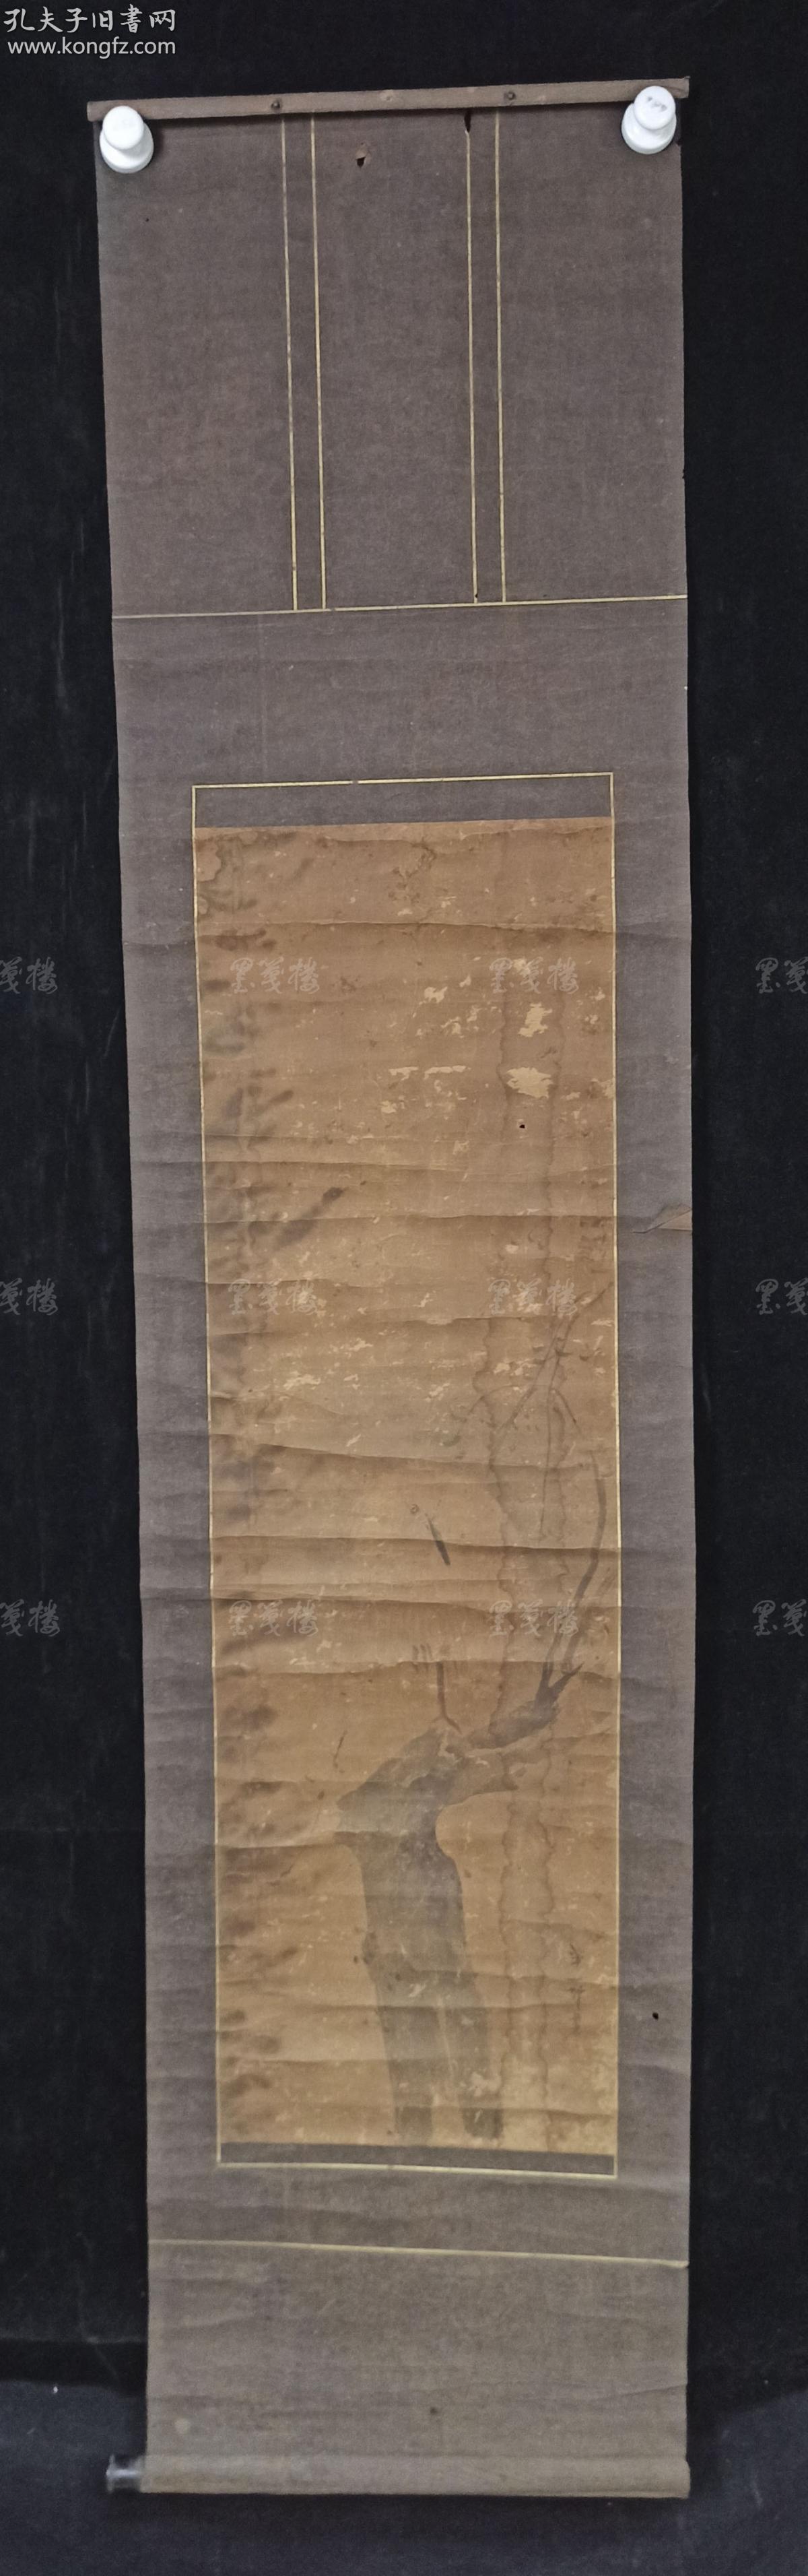 日本回流 日本风俗画派代表画家英一蝶 1652 1724 水墨画作品 干枝图 一幅 纸本立轴 画心约2 5平尺 Hxtx3114 孔夫子旧书网